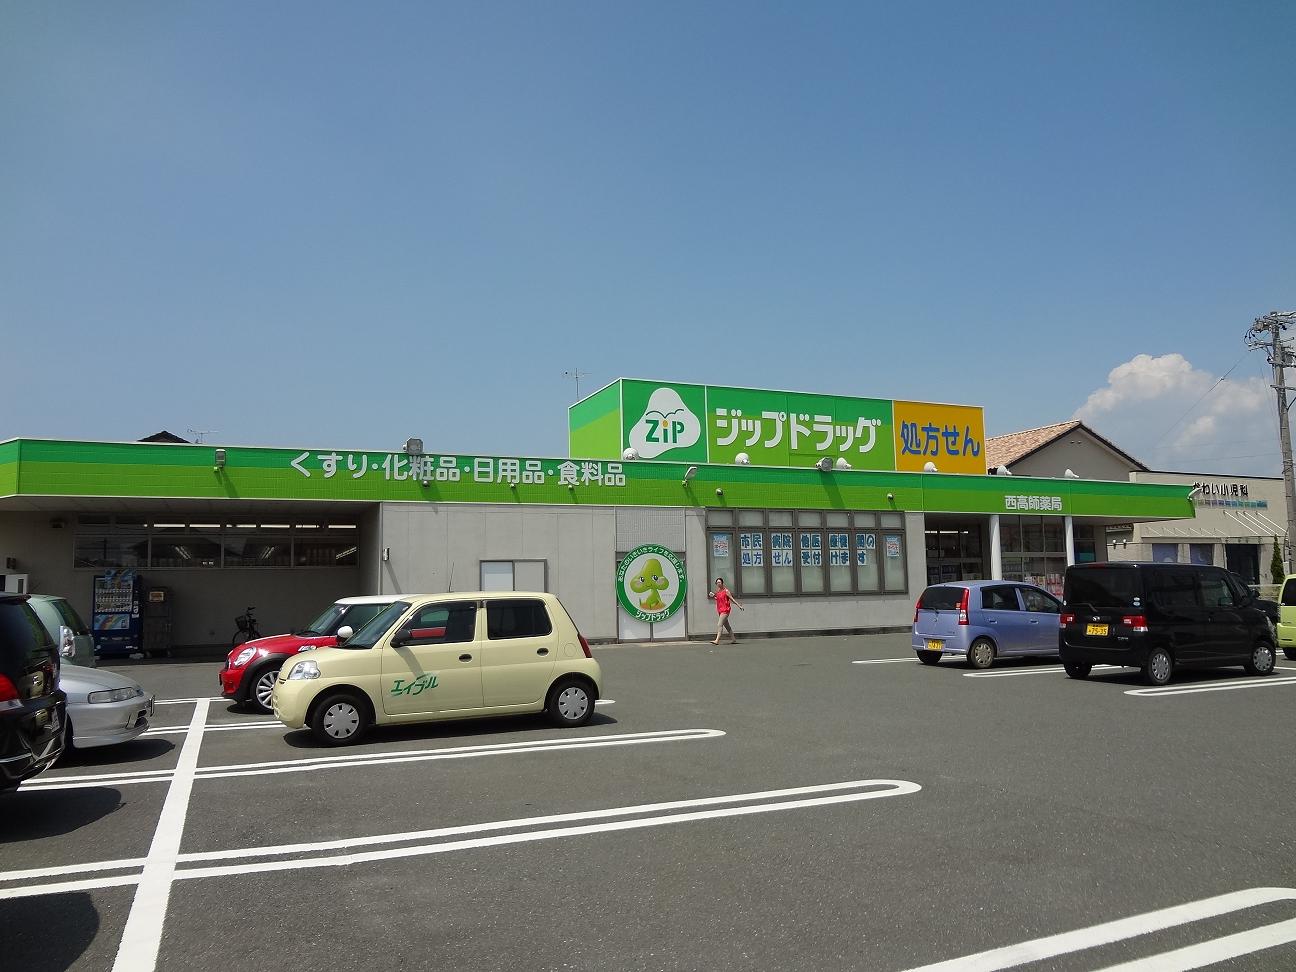 Dorakkusutoa. Zip drag ・ Apasu Nishitakashi shop 824m until (drugstore)